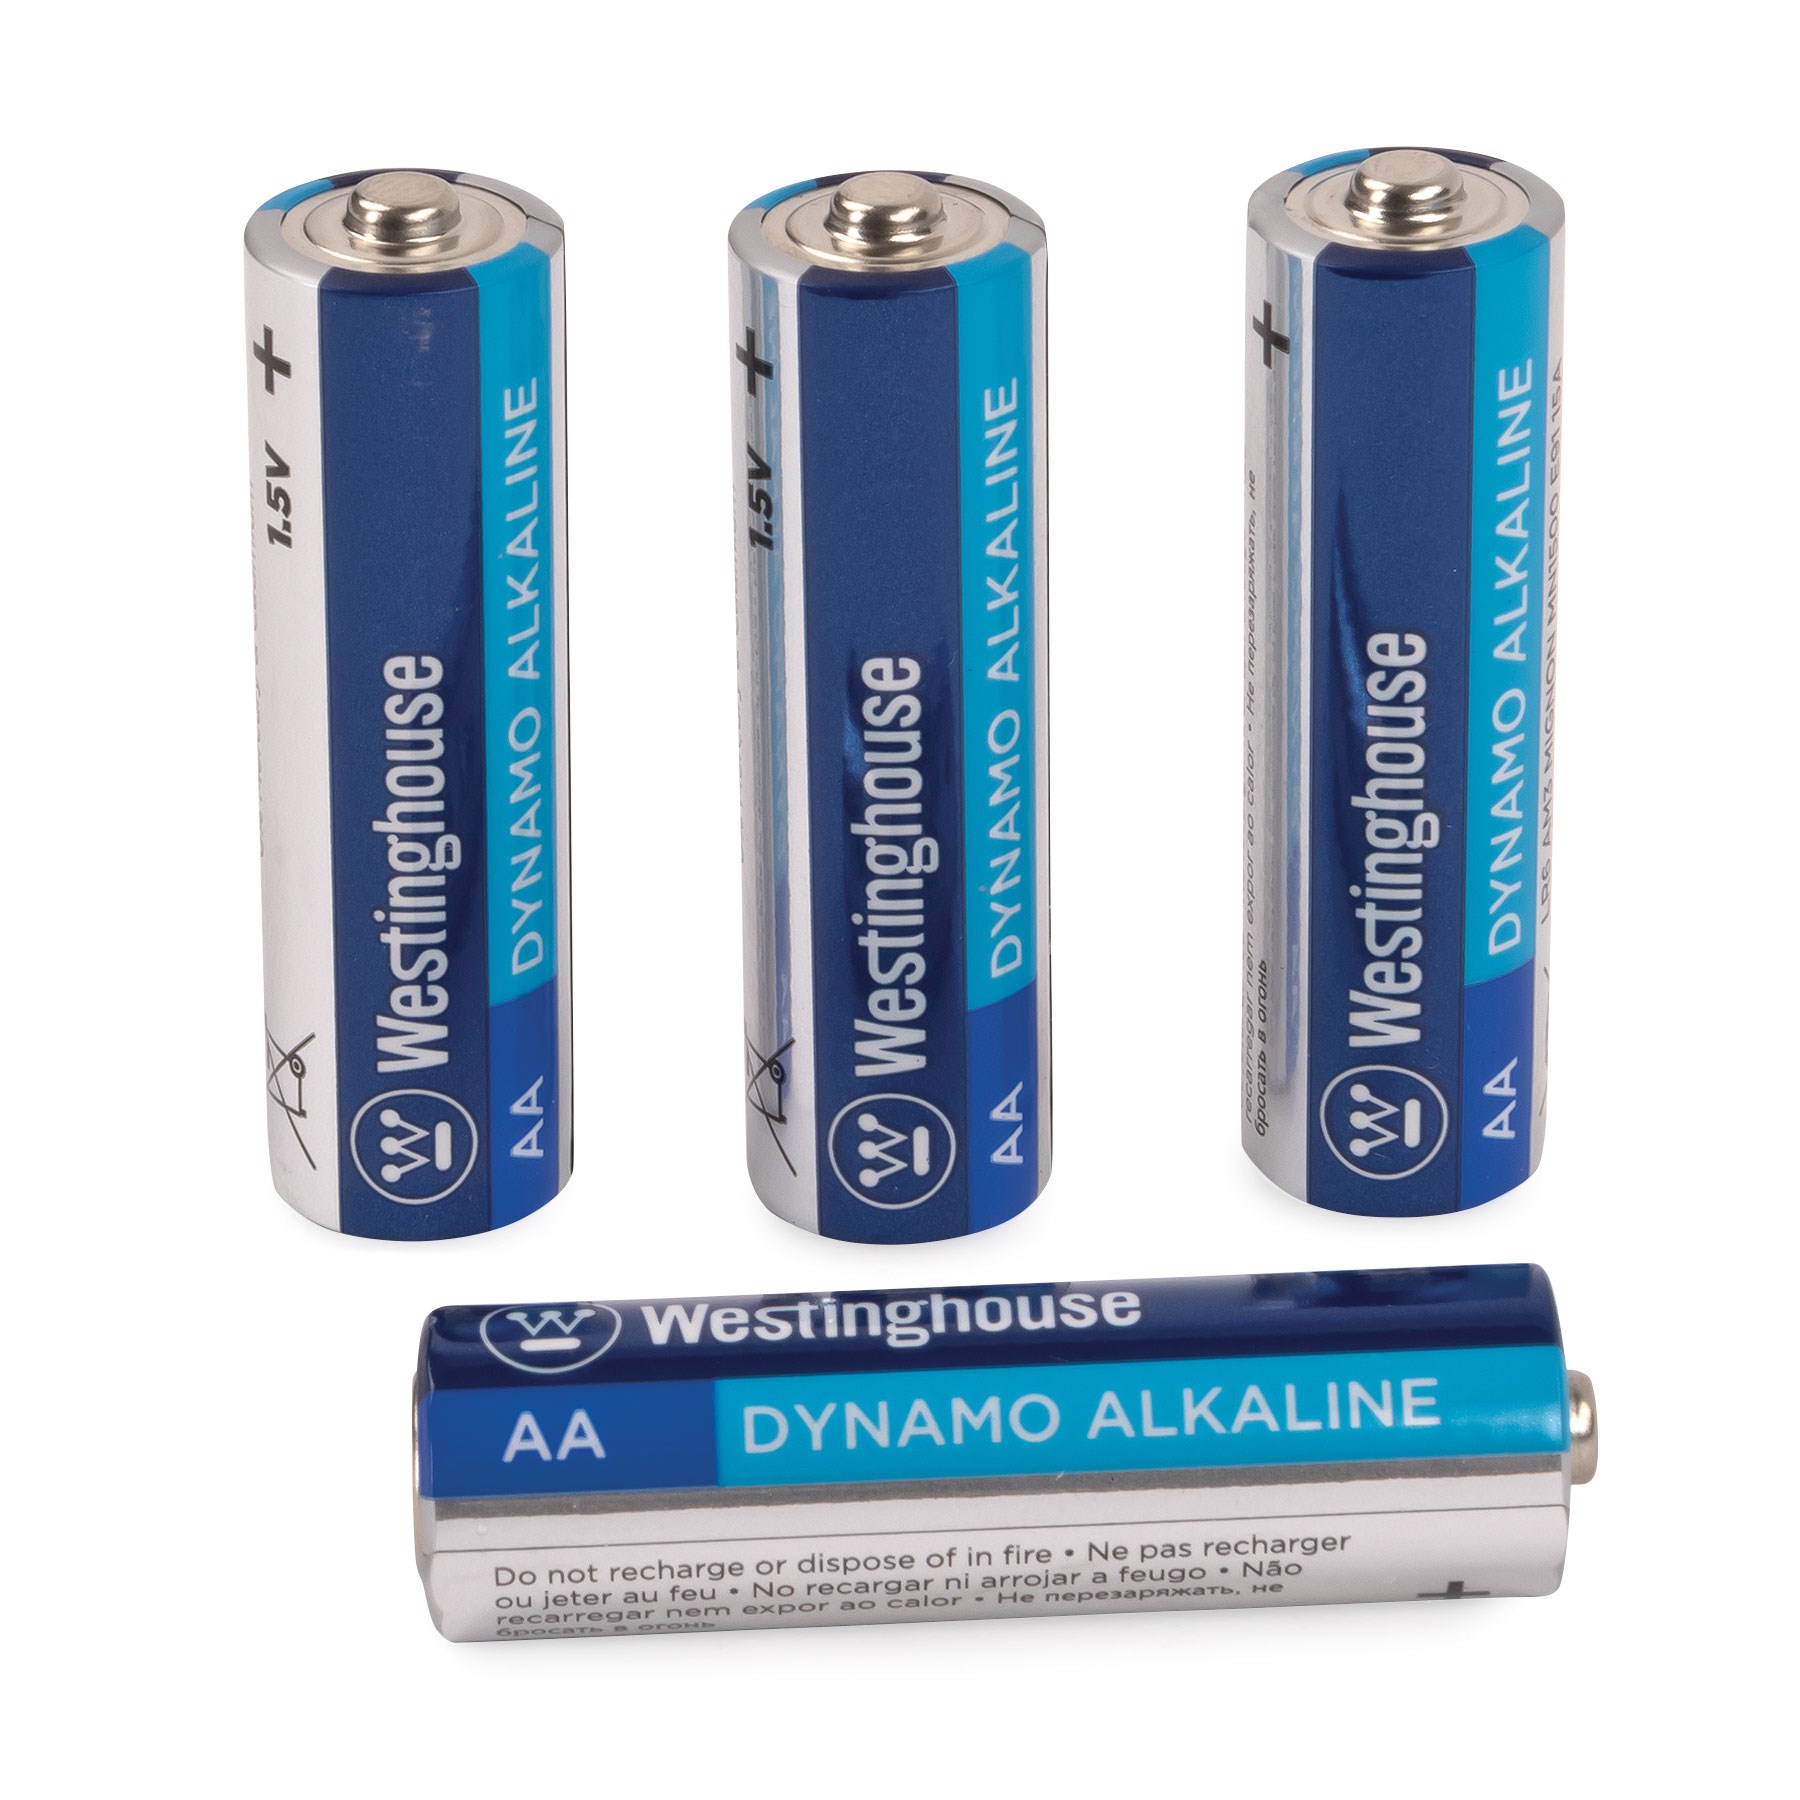 AA Batteries (4 pack) loose